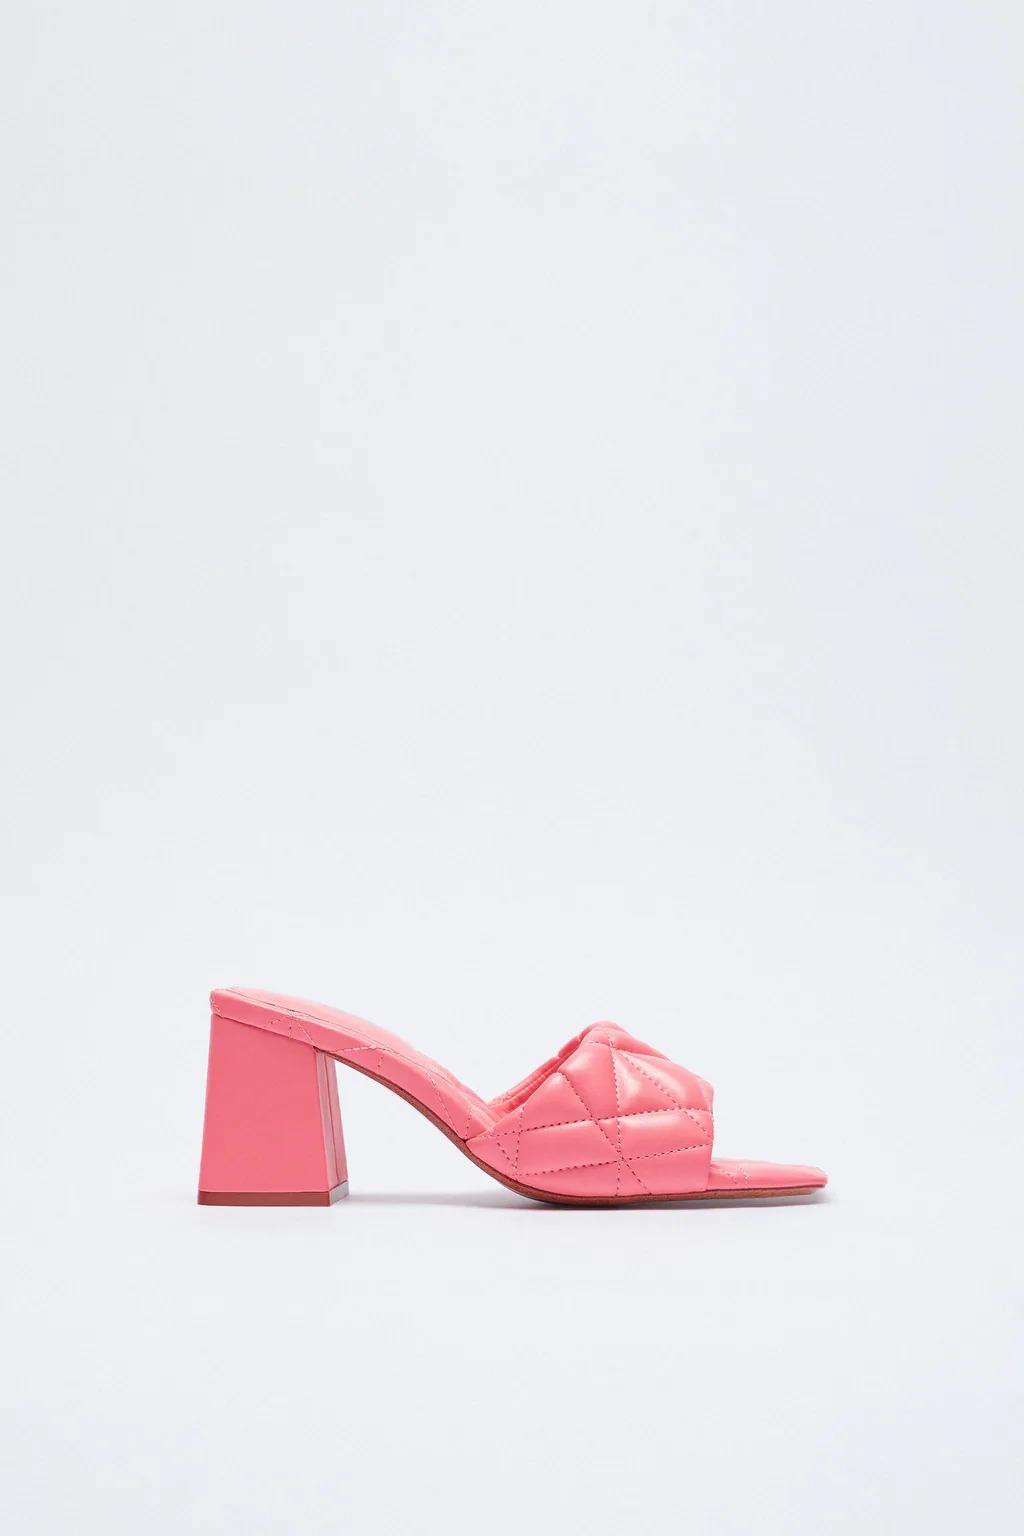 Sandalia acolchada rosa